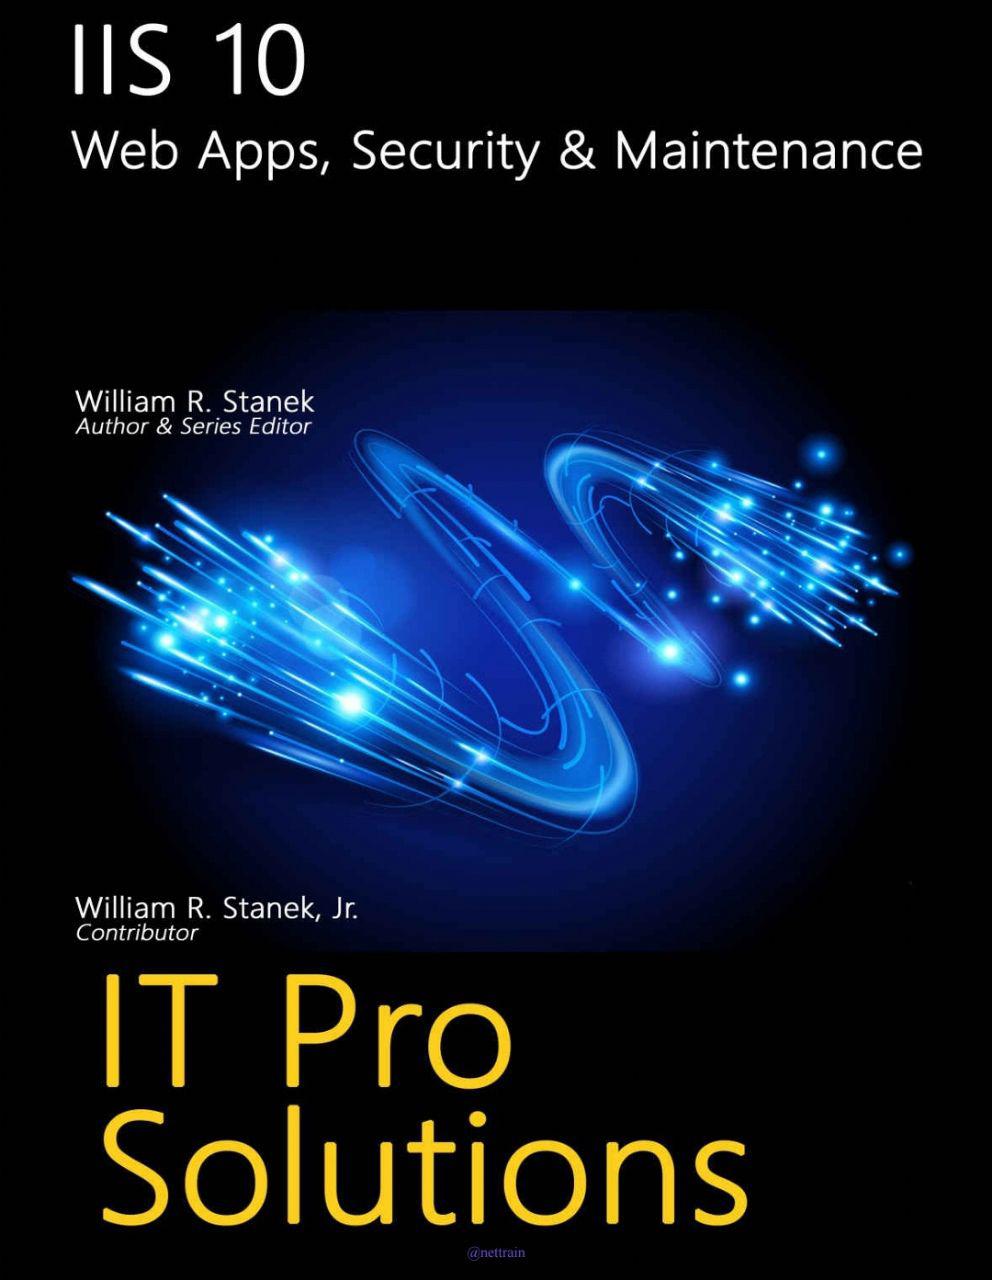 کتاب IIS 10 Web Apps, Security & Maintenance